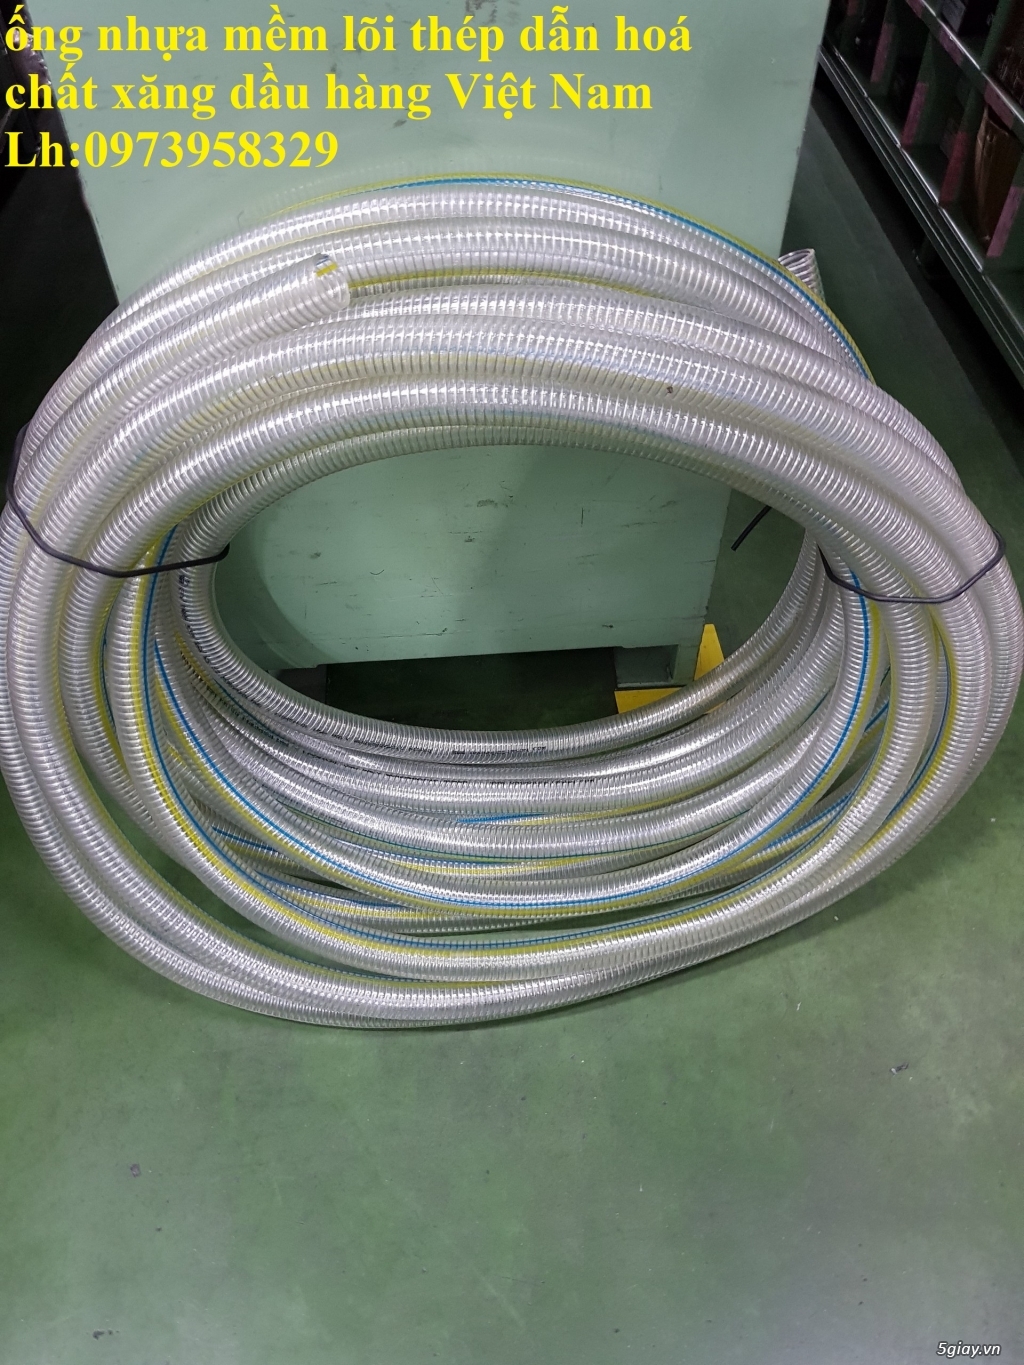 đại lý cung cấp ống nhựa lõi thép giá rẻ Phi 200 - giao hàng toàn quốc - 3